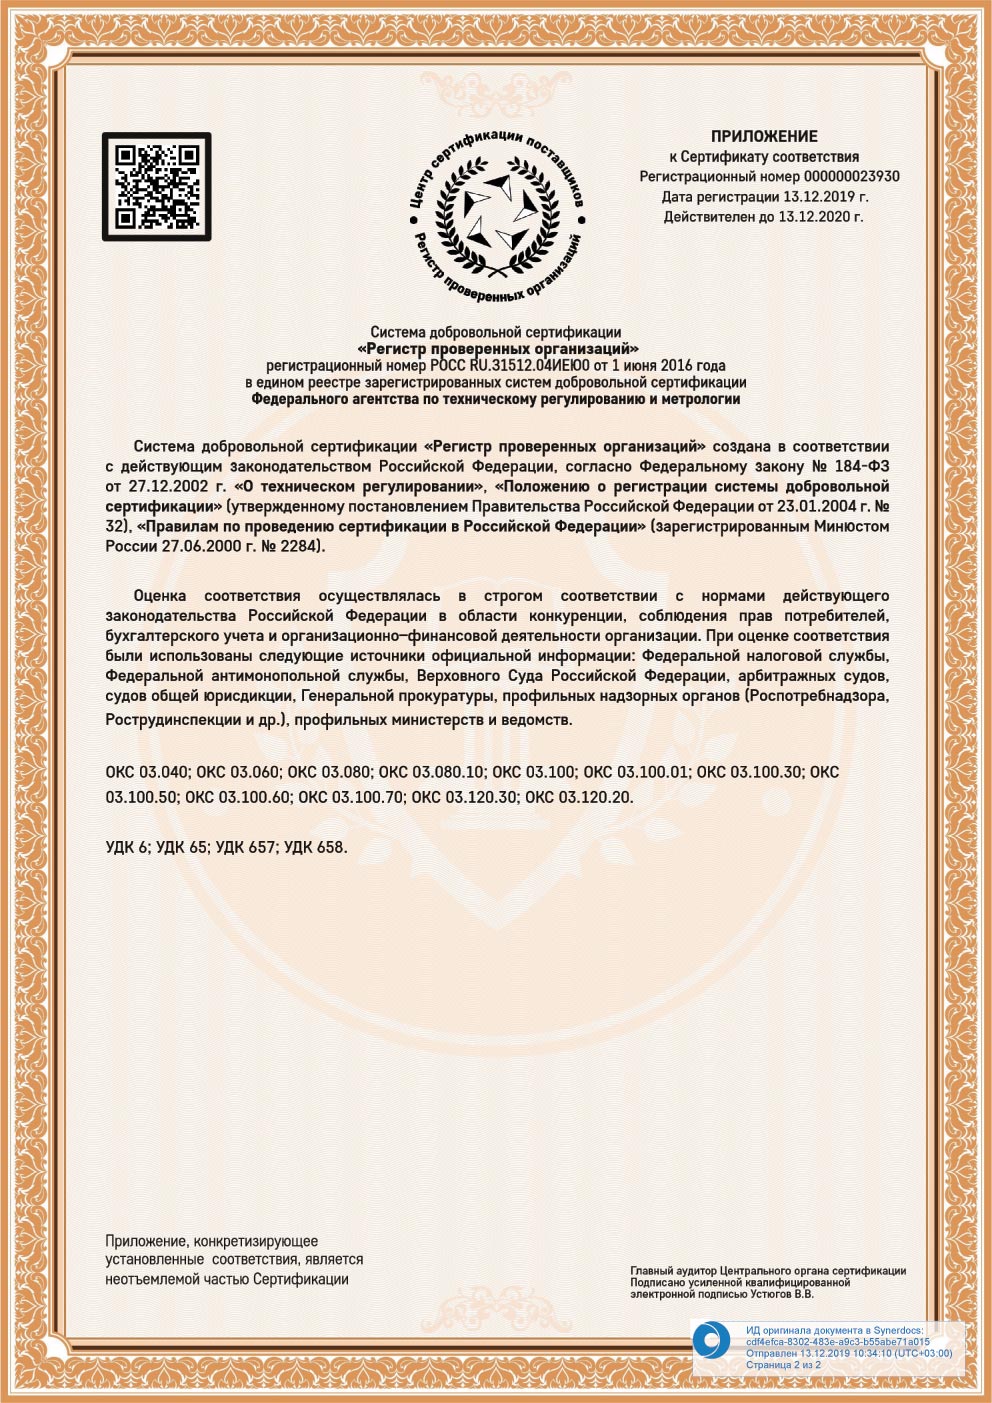 Сертификат соответствия требованиям ГОСТ. Приложение 